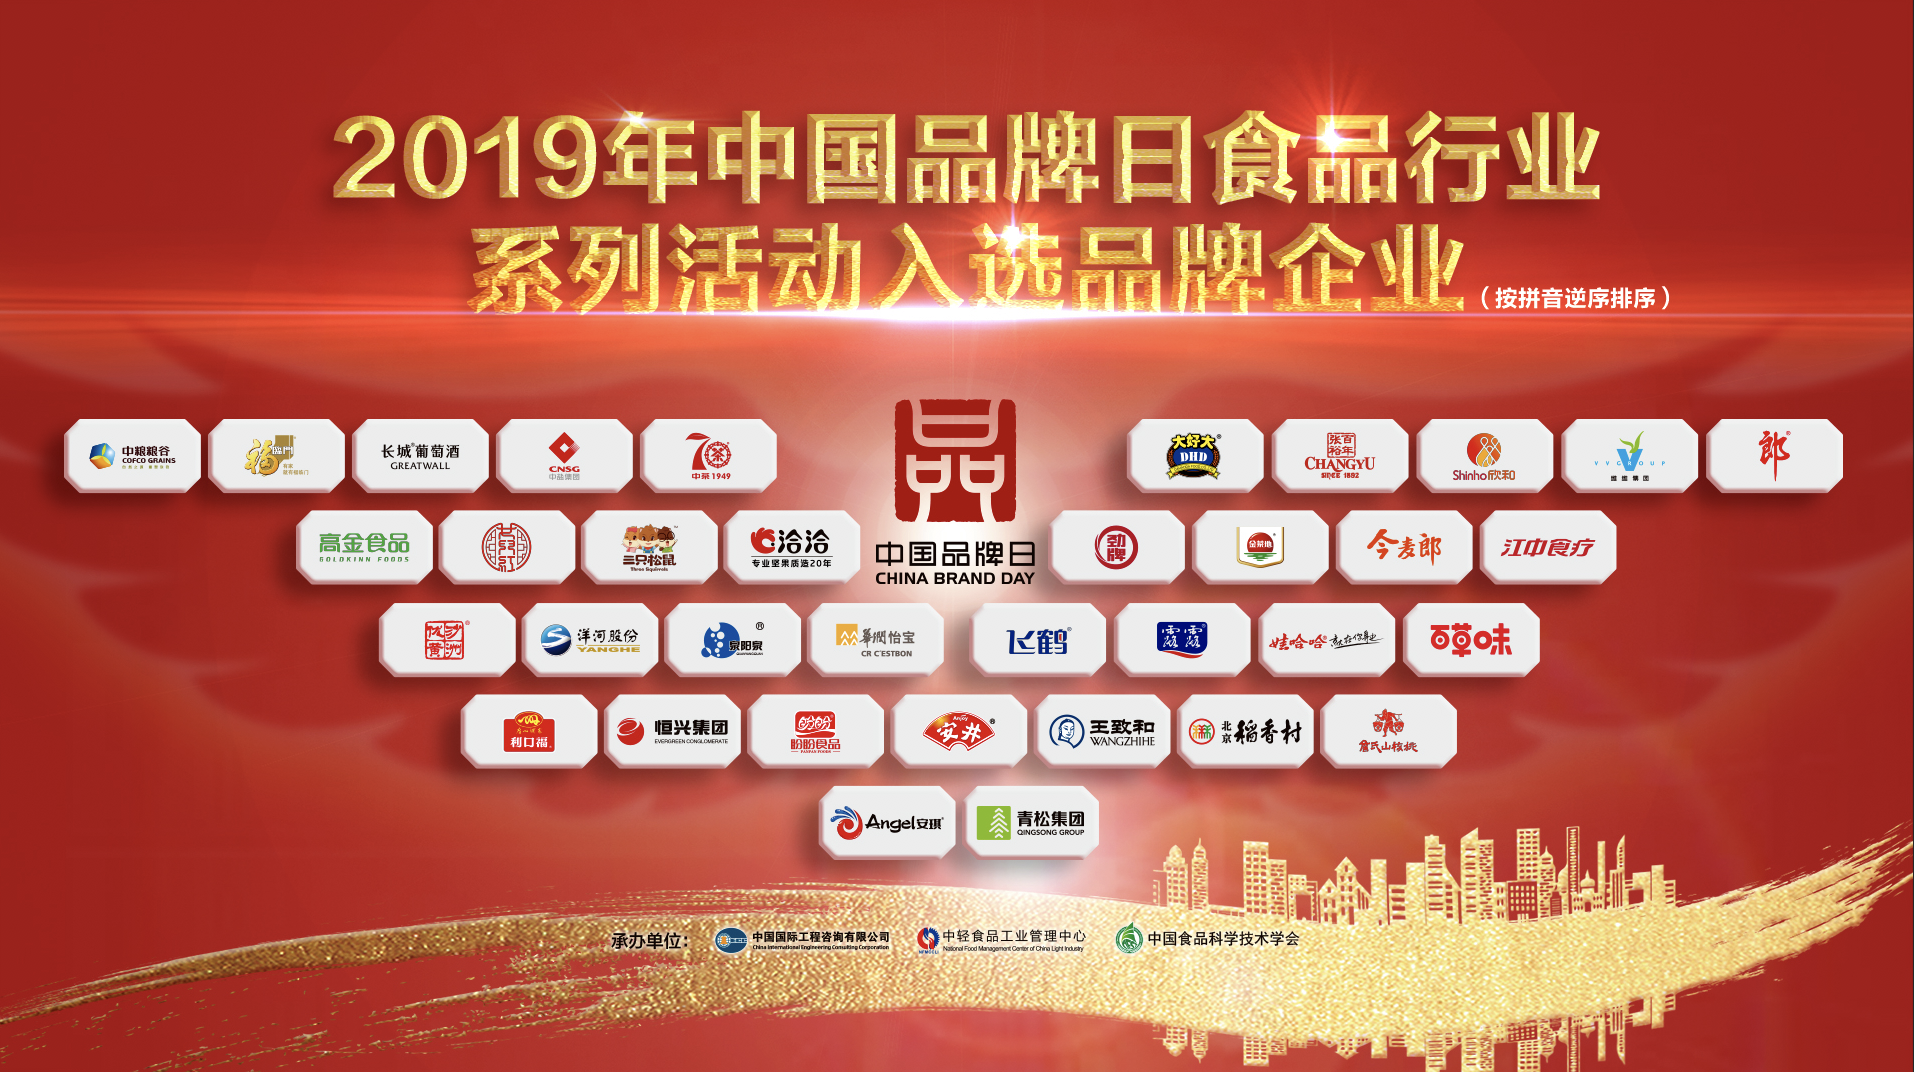 35家自主品牌企业将亮相中国品牌日食品行业系列活动